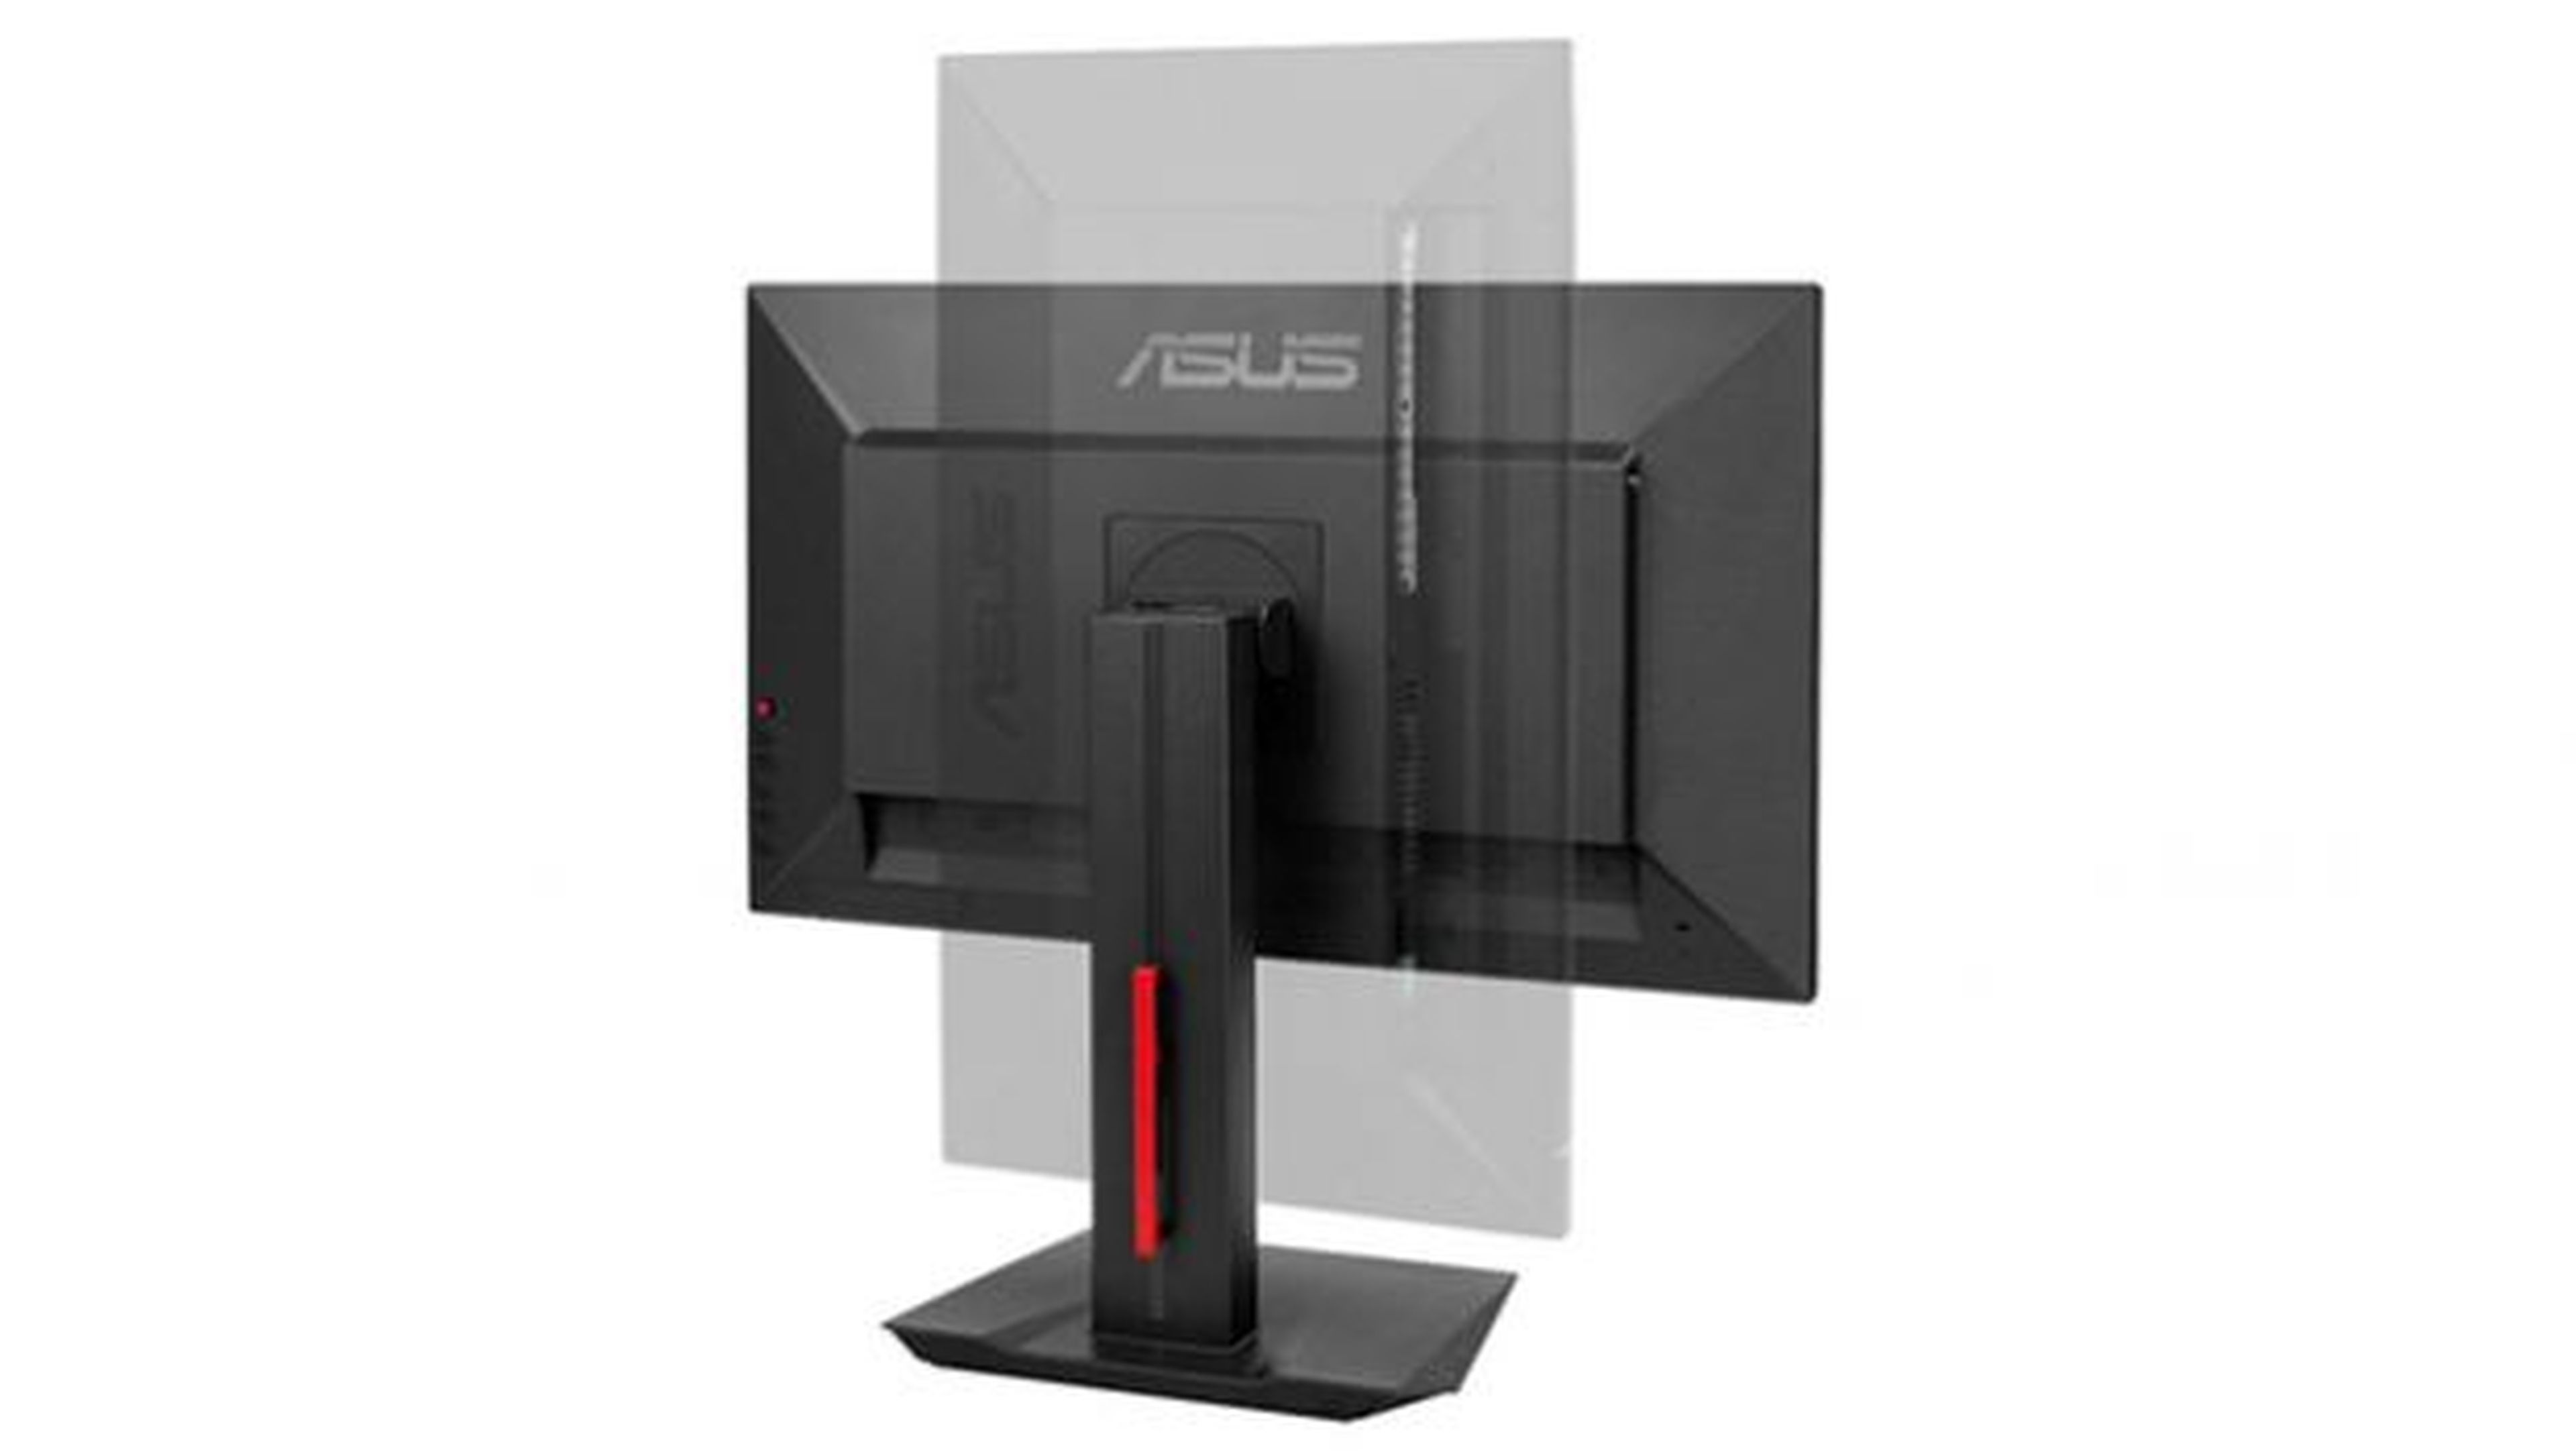 Sin duda el Asus MG279Q cuenta con todo lo necesario para entrar pisando fuerte en nuestra selección de los 5 mejores monitores para gaming de 2015.